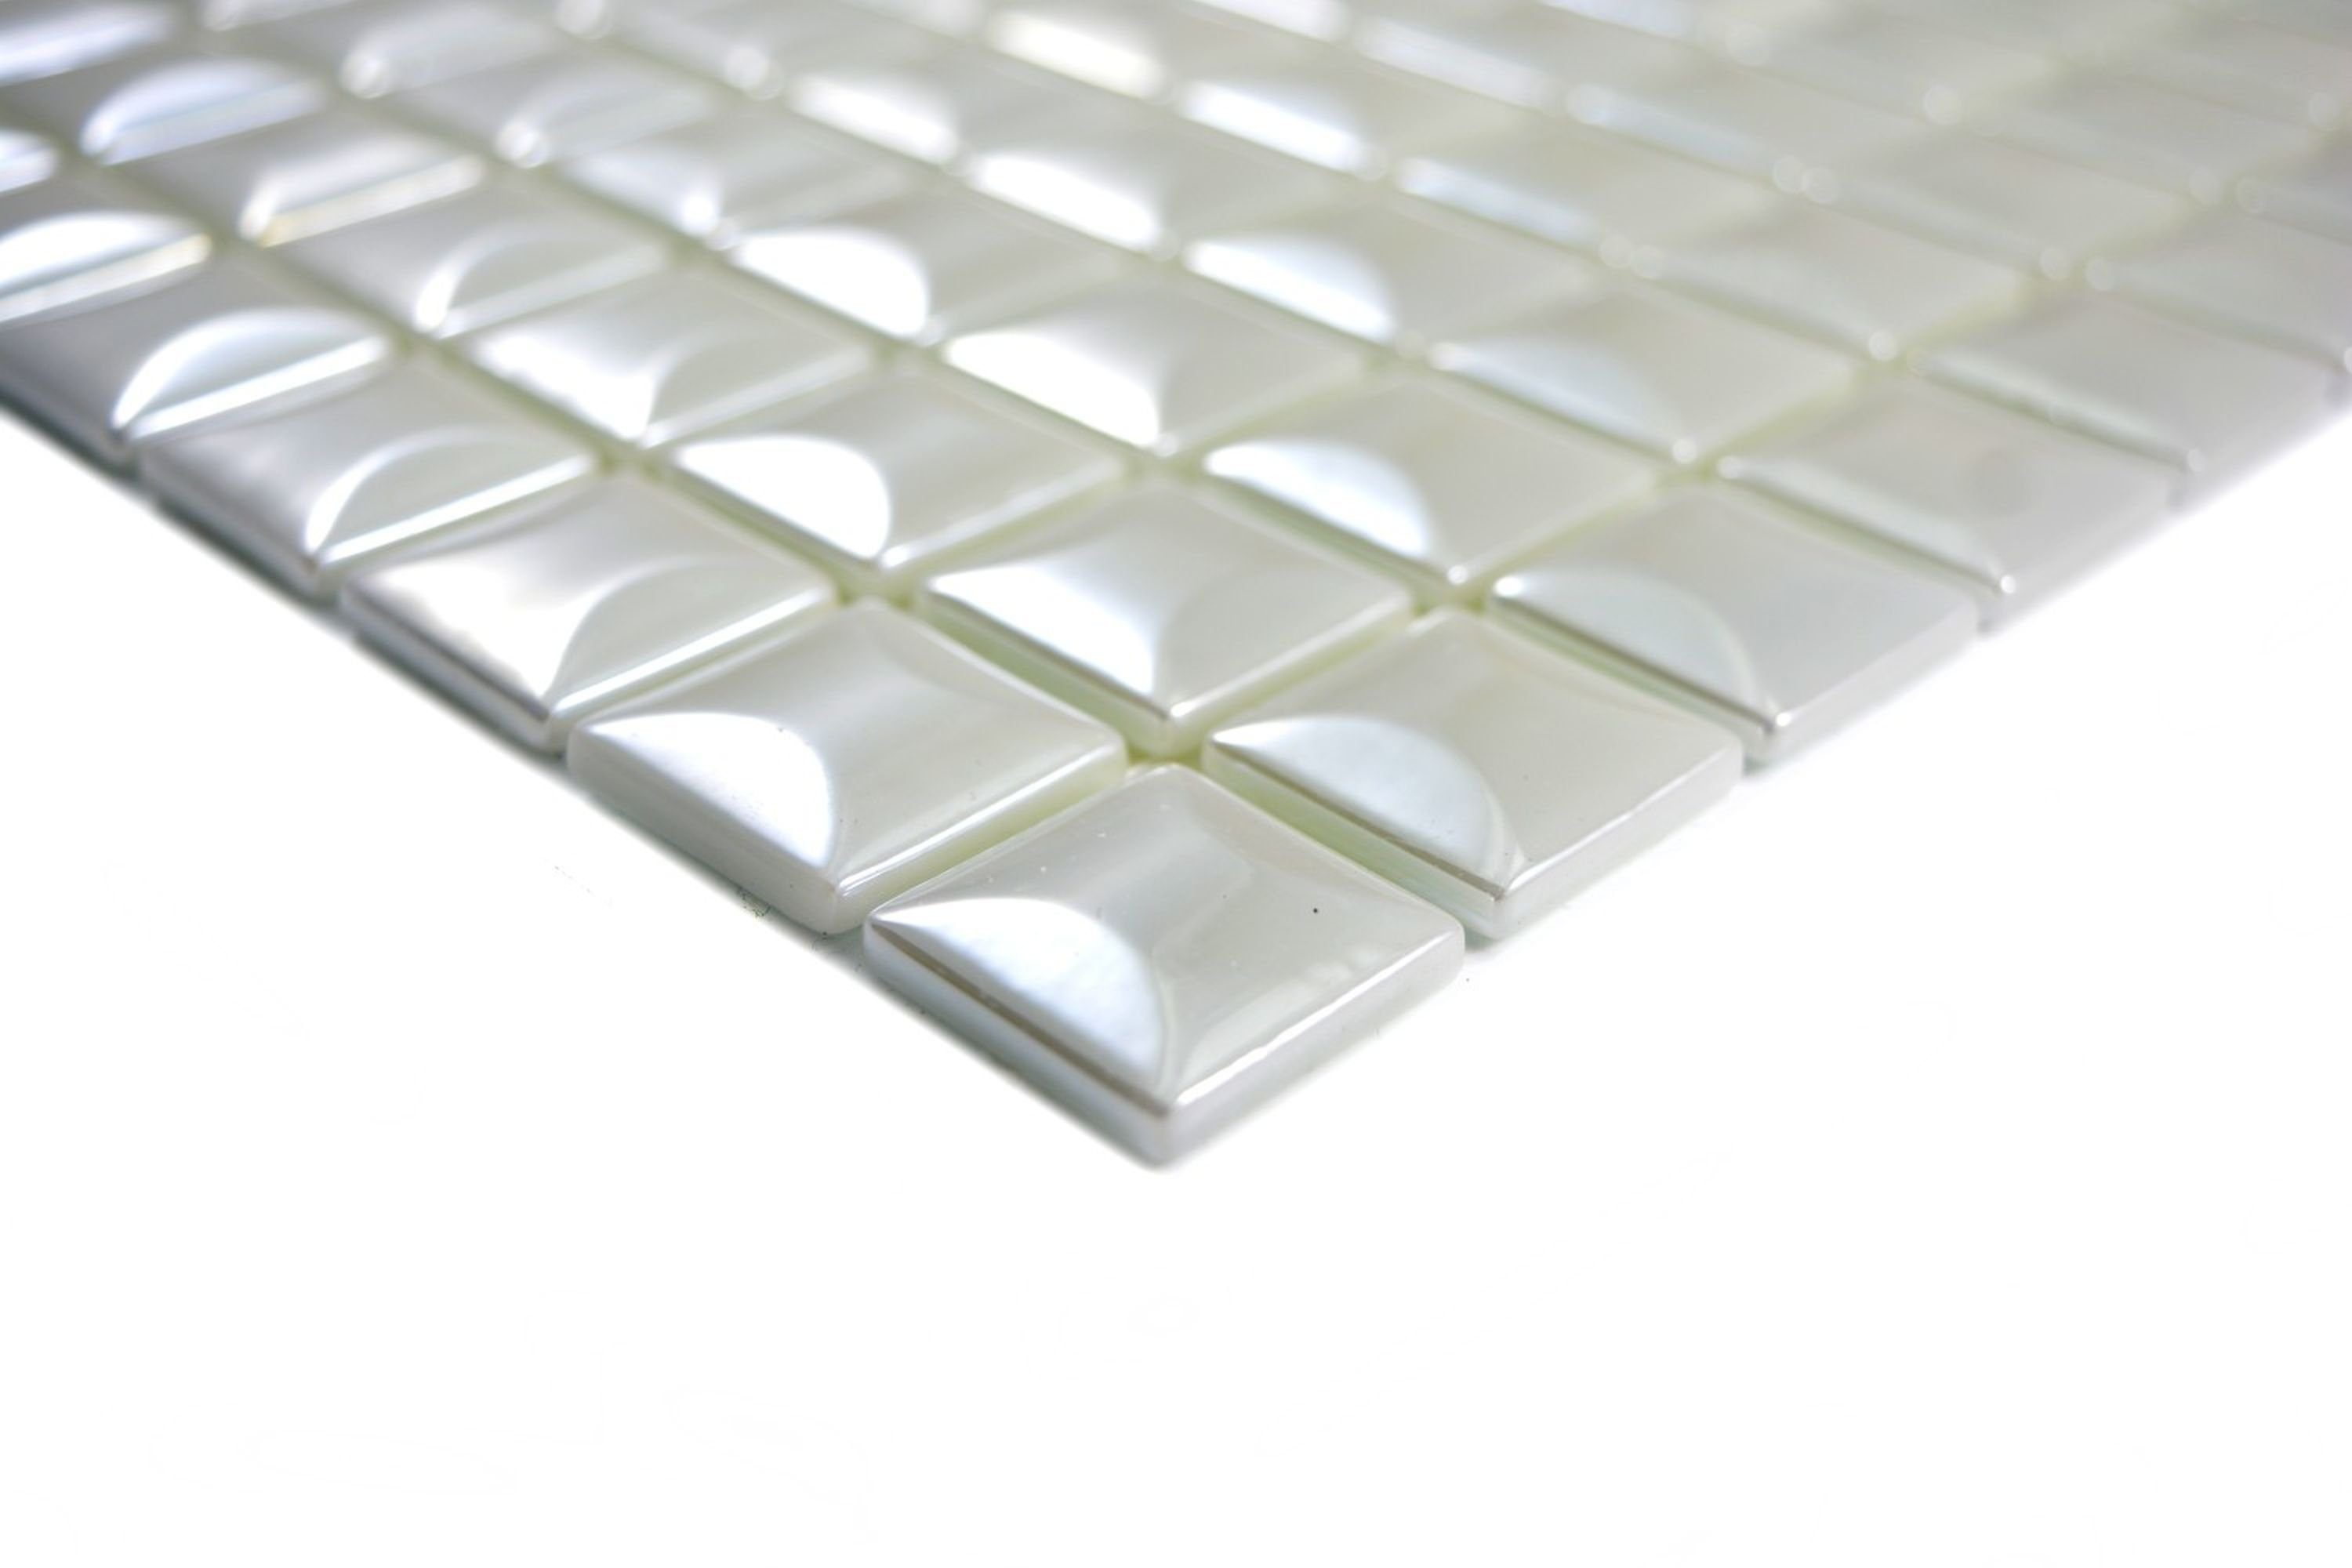 Mosani Mosaikfliesen Recycling glänzend 10 Mosaikmatten Mosaikfliesen Glasmosaik weiß 